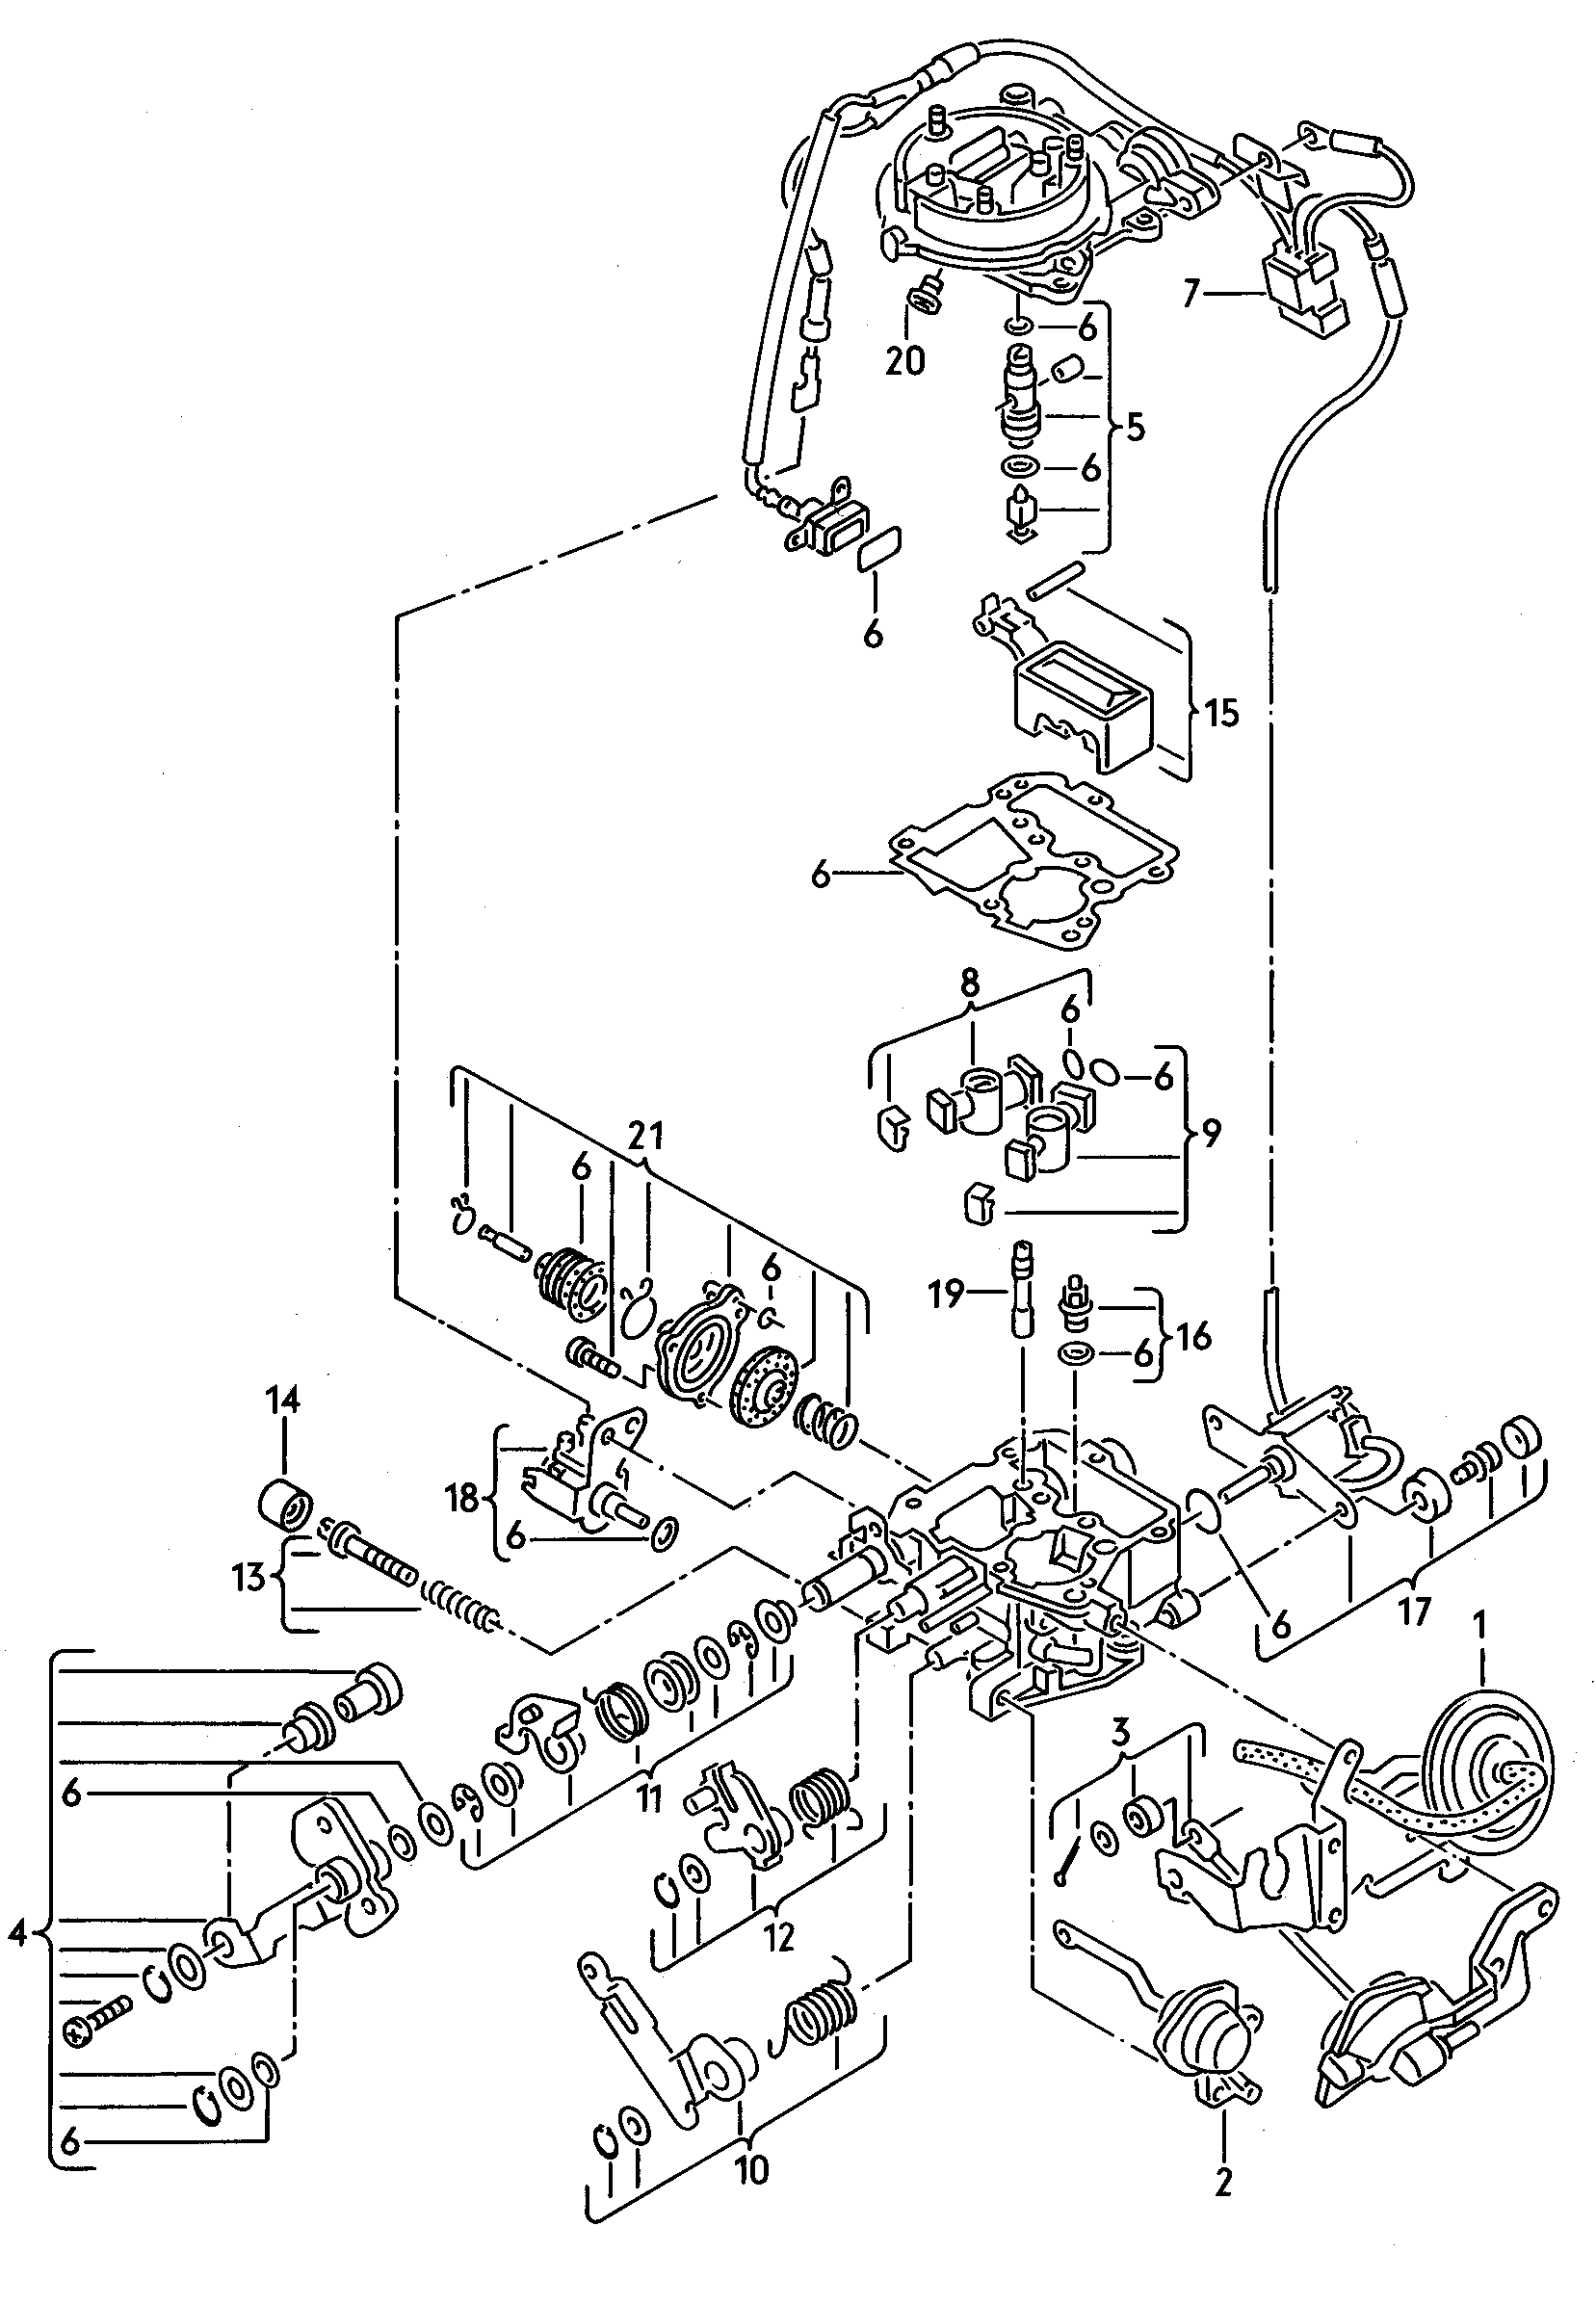 carburador keihinp. vehiculos reequipados con<br>sist. depuracion gases escape<br>regulado por sonda lambda 1,8l - Audi 100/Avant - a100